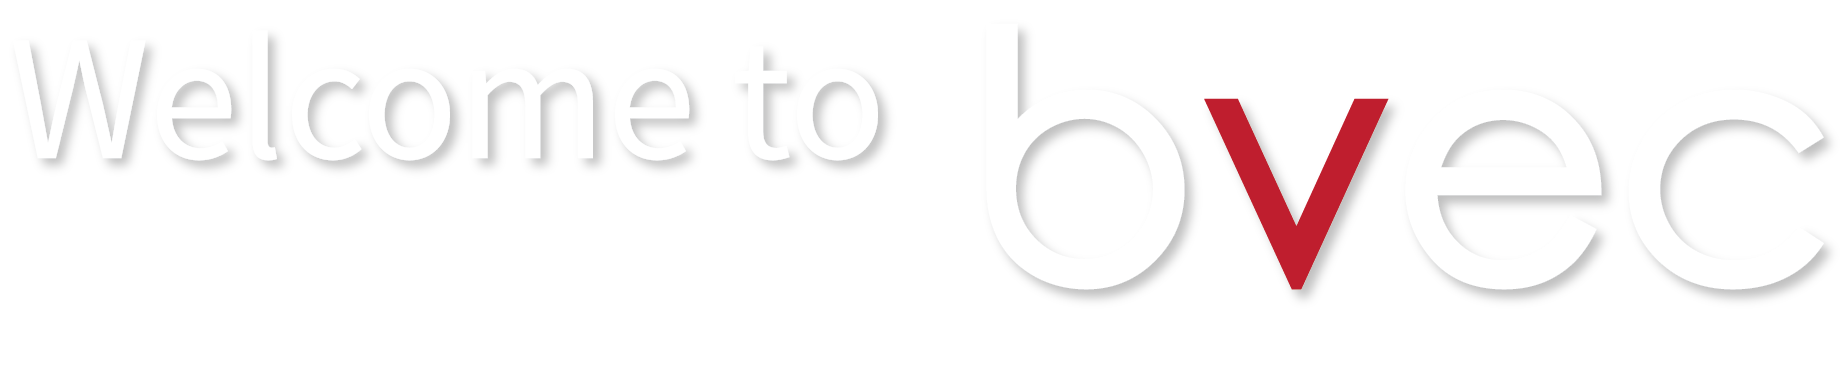 bvec_logo